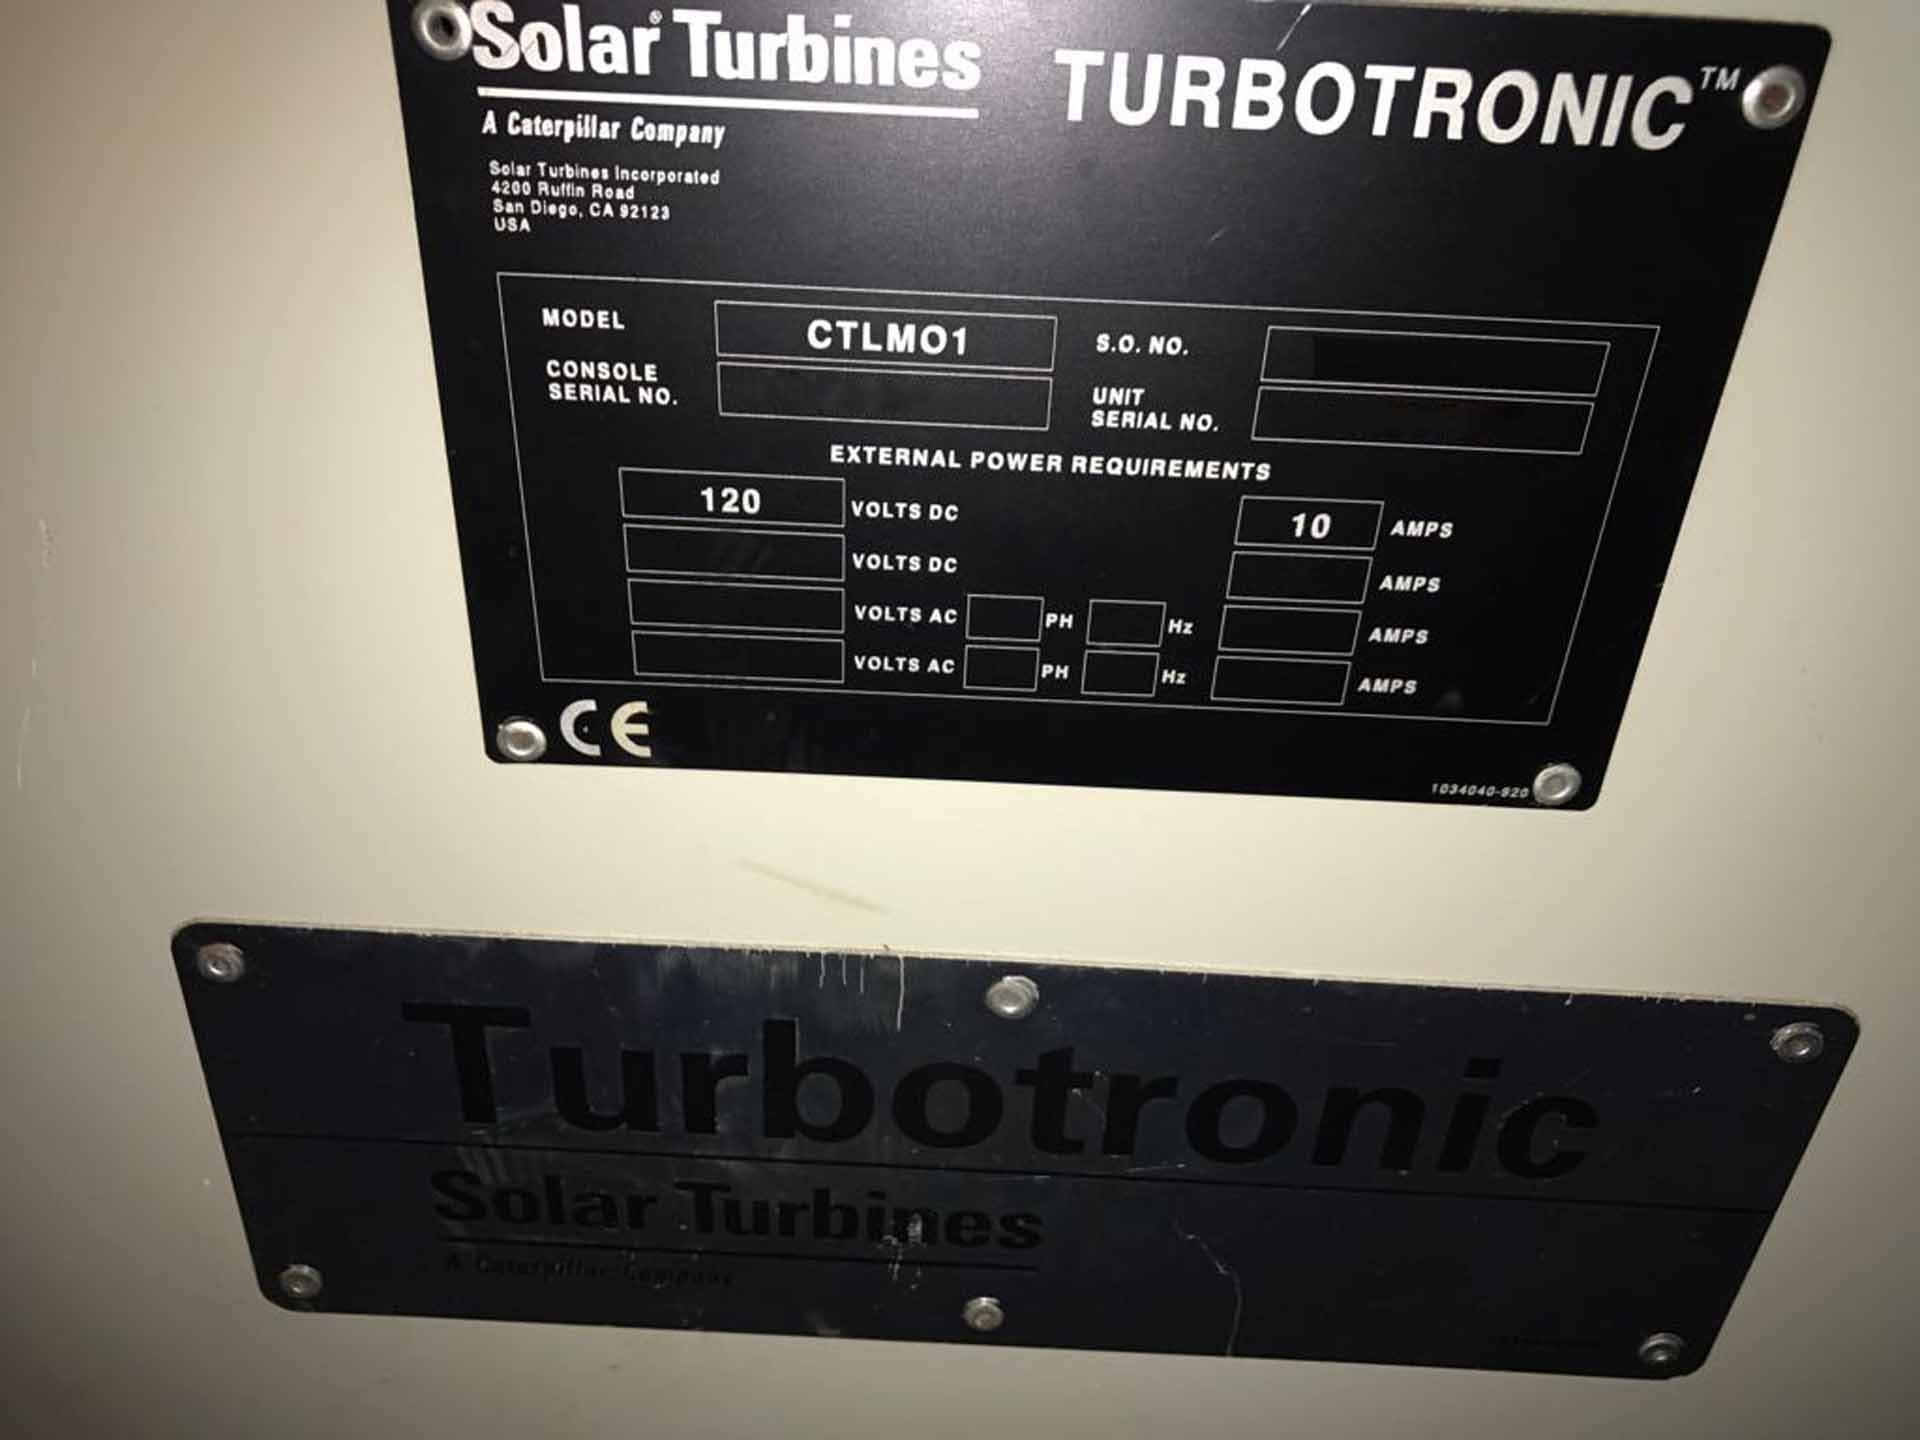 圖為 已使用的 SOLAR TURBINE Taurus 70S 待售